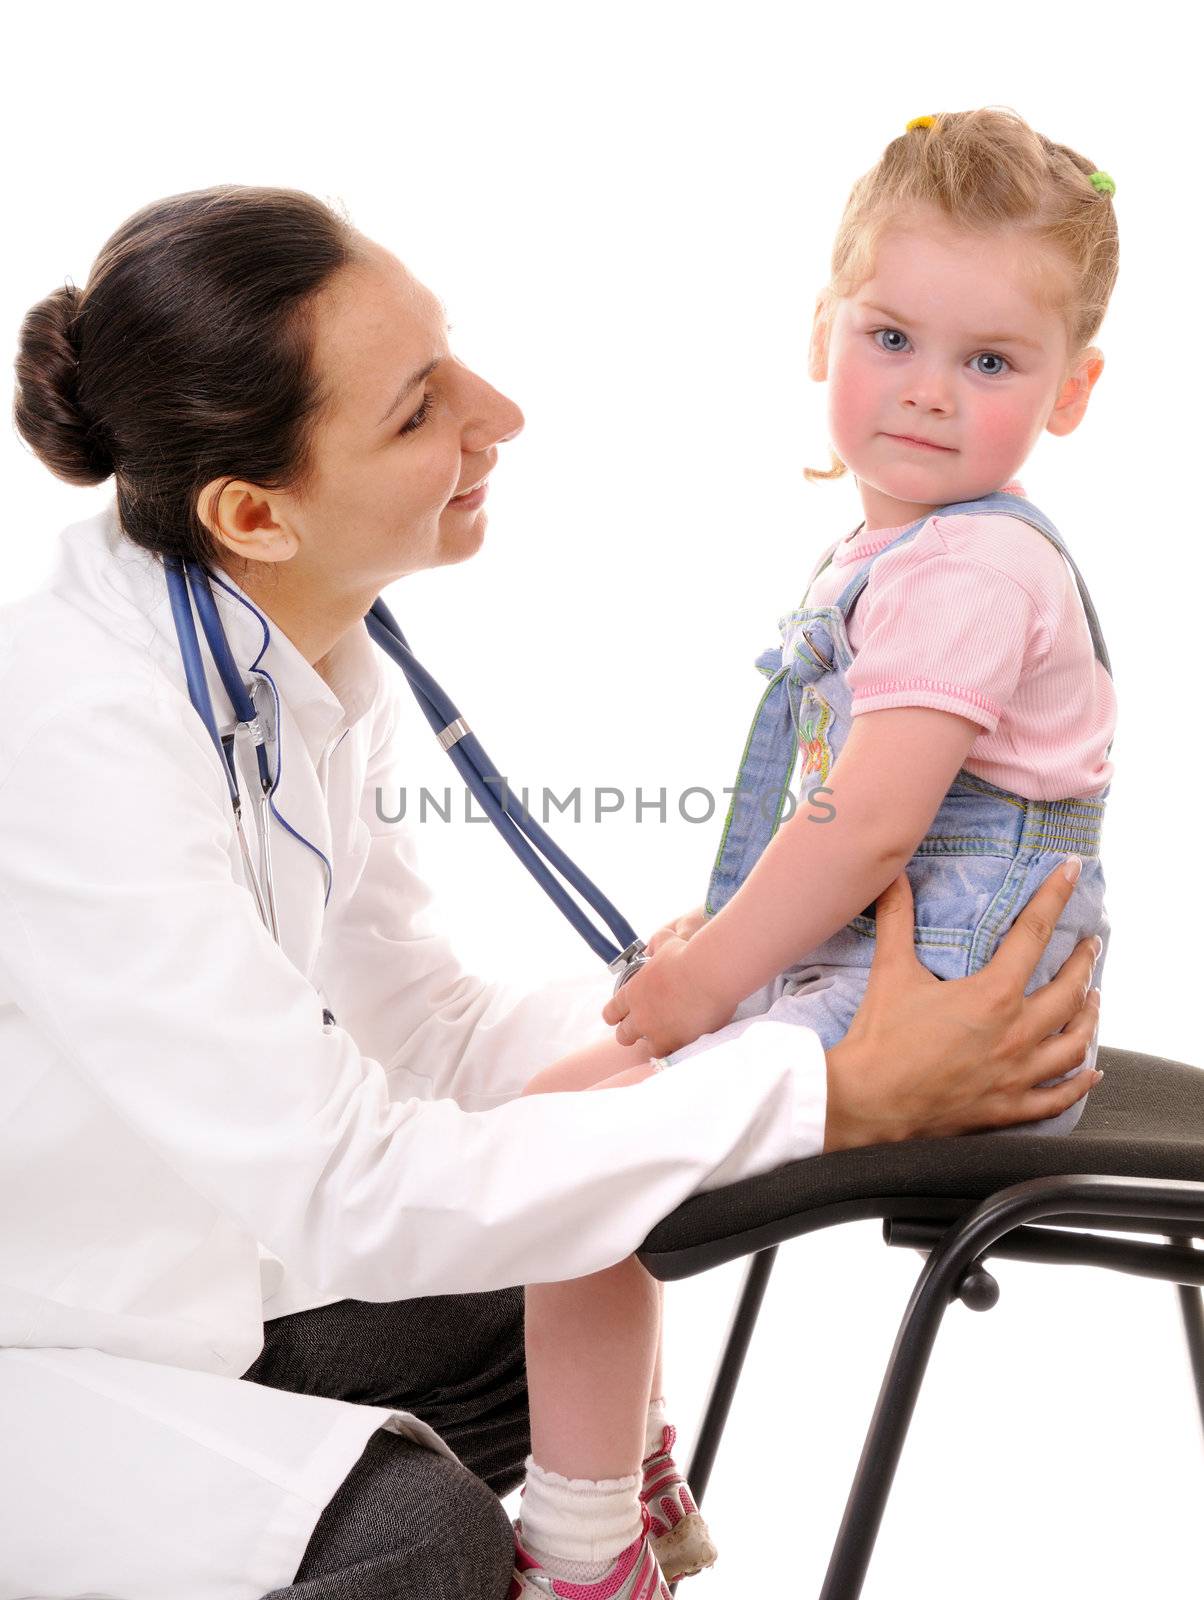 Child and doctor by iryna_rasko